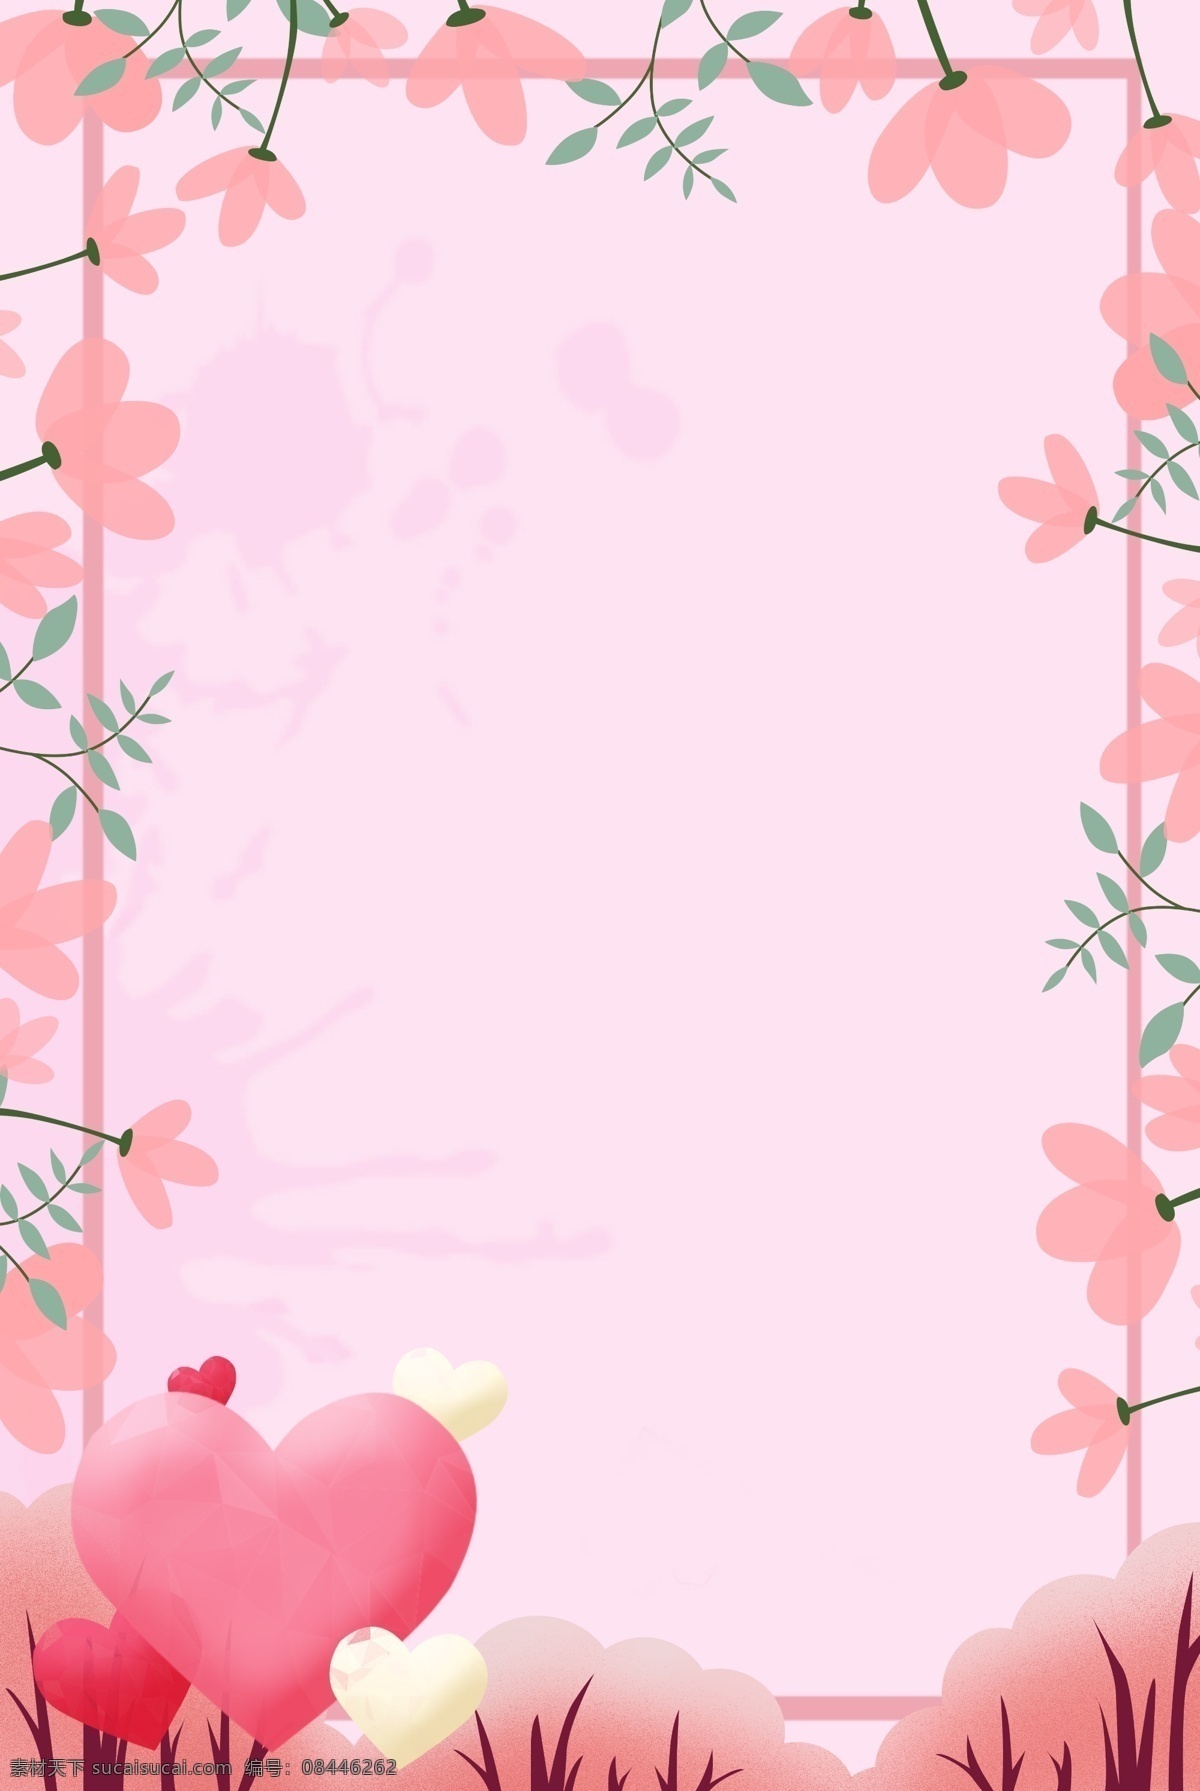 七夕 花朵 商家 促销 背景 唯美 爱情 爱 粉色 爱心 边框 手绘 水彩 情感 节日